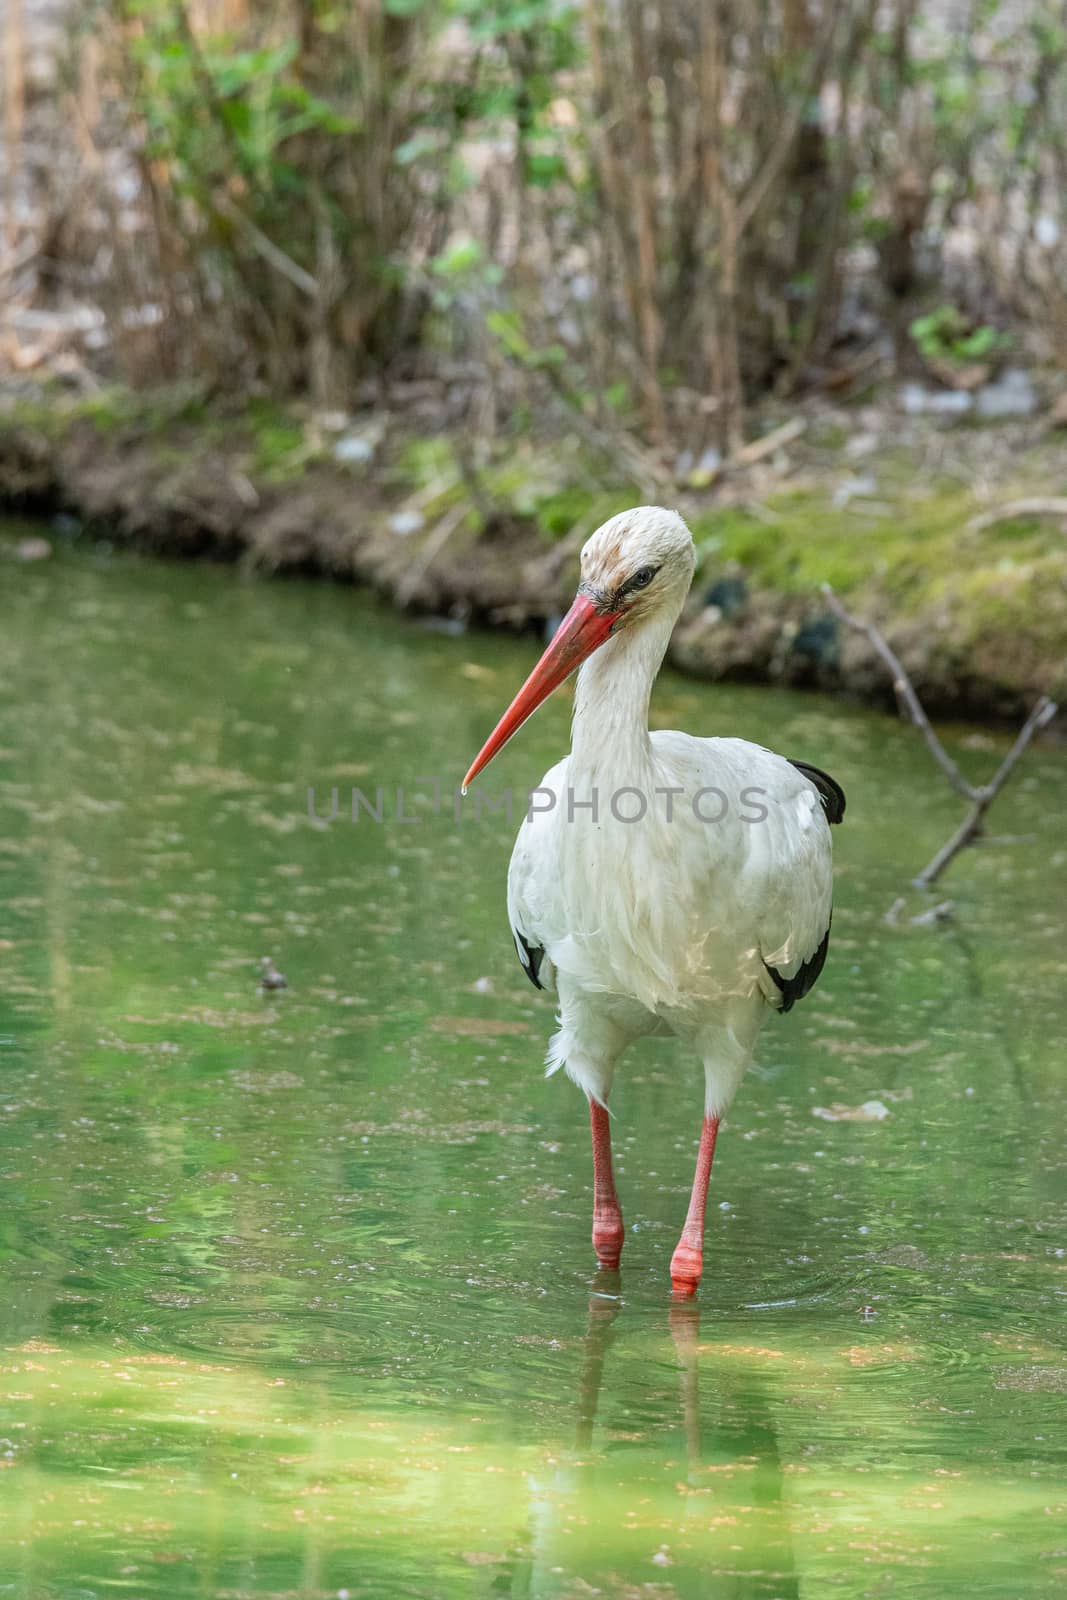 White stork walks in a pond, large European bird by brambillasimone